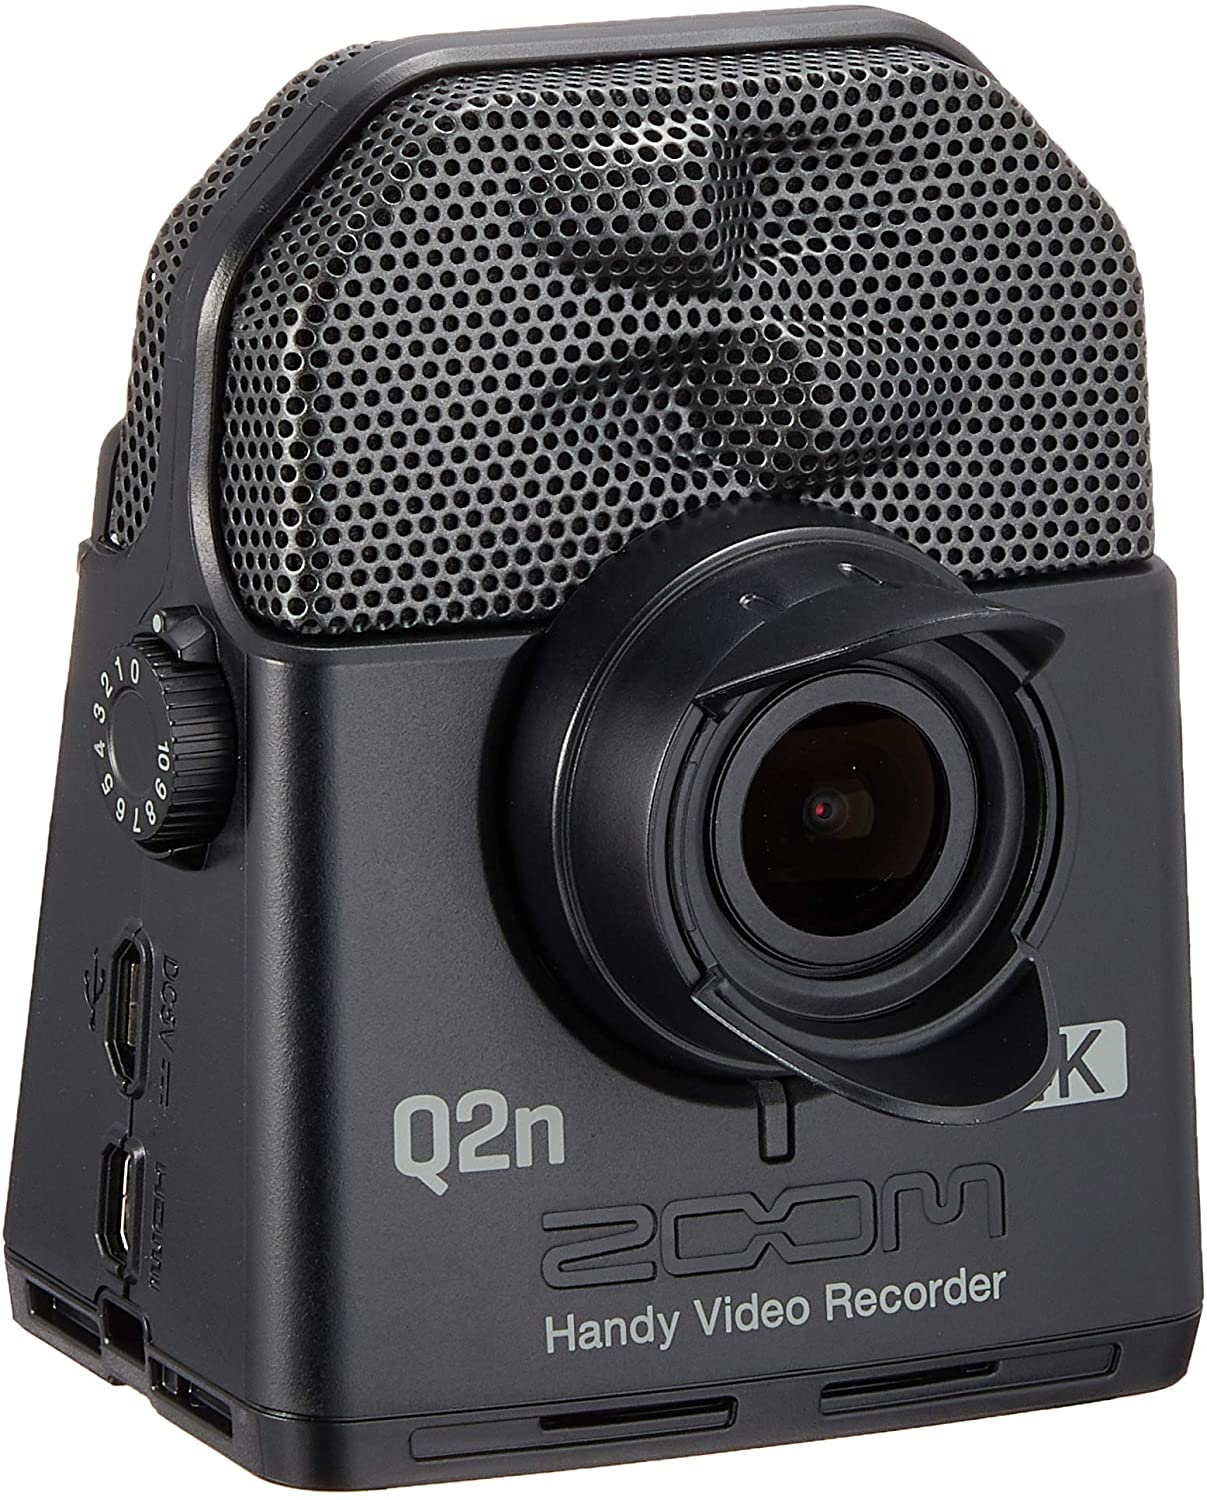 ZOOM Q2n-4K ズーム ハンディ ビデオレコーダー ハイレゾ音質 4K画質 フルHD 【新品】【送料無料】【楽天ランキング入賞】